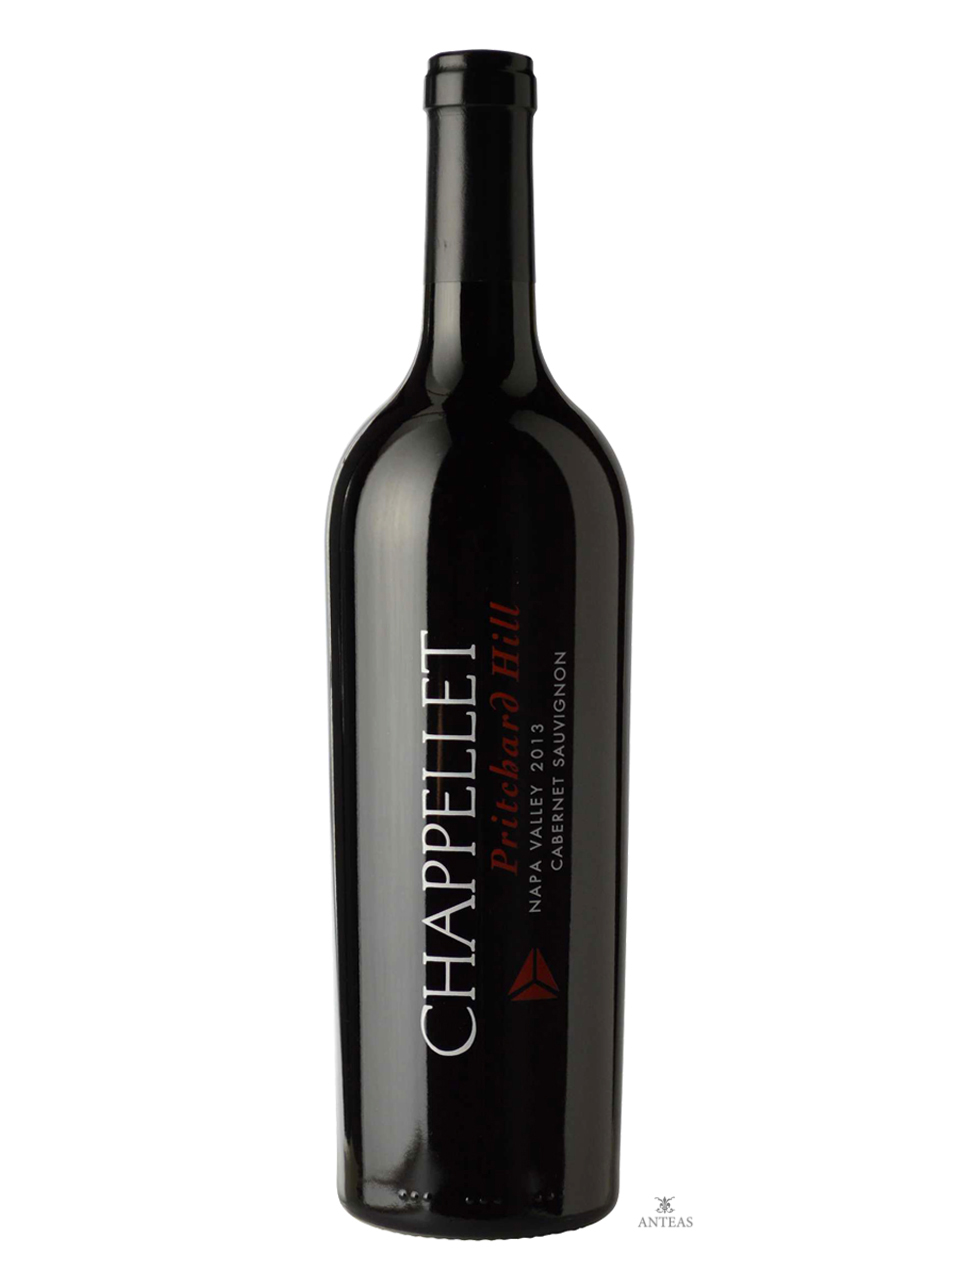 Chappellet – Pritchard Hill Cabernet Sauvignon 2001